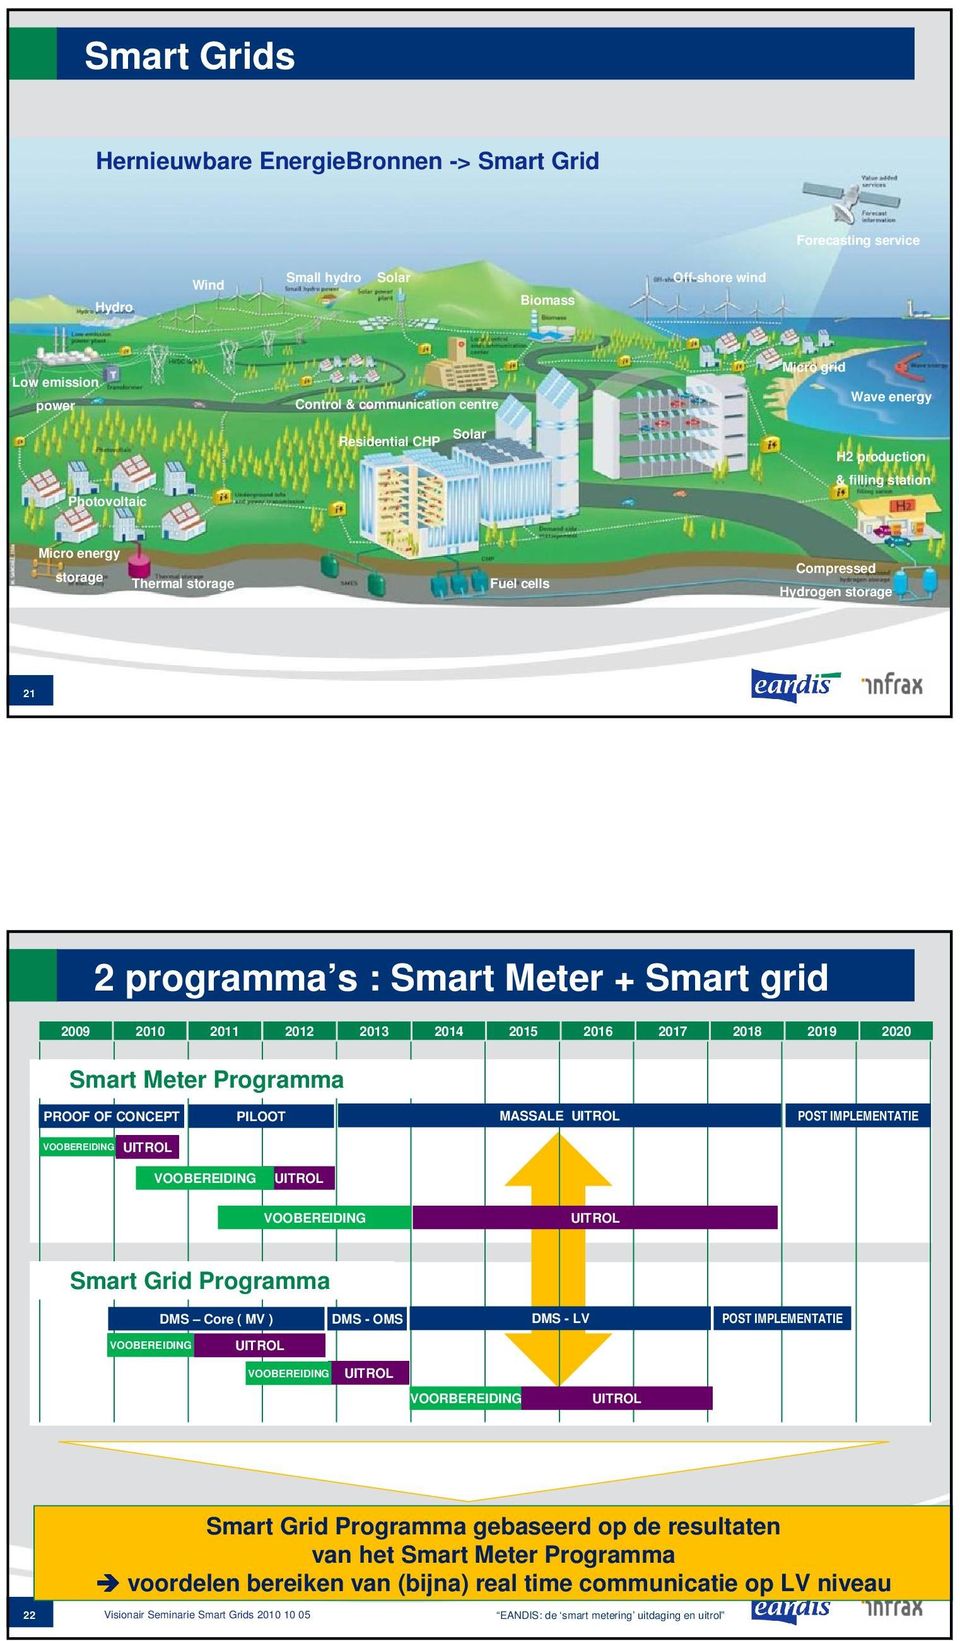 2014 2015 2016 2017 2018 2019 2020 Smart Meter Programma PROOF OF CONCEPT PILOOT MASSALE UITROL POST IMPLEMENTATIE VOOBEREIDING UITROL VOOBEREIDING UITROL VOOBEREIDING UITROL Smart Grid Programma DMS